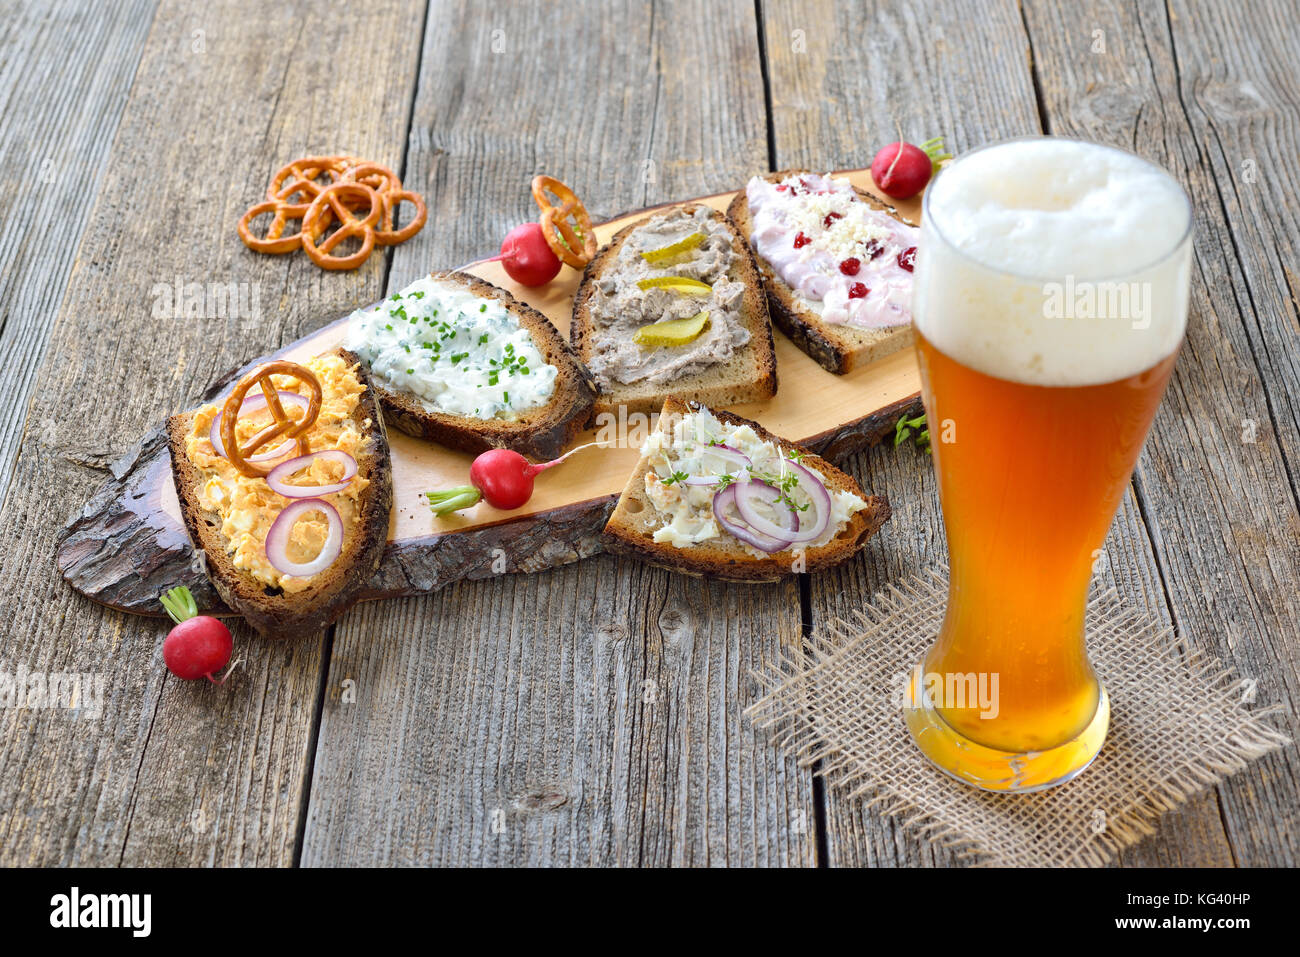 Petit snack avec différents types de pâtes à tartiner sur pain de campagne servi avec une bière de blé levure fraîche sur une vieille table en bois Banque D'Images